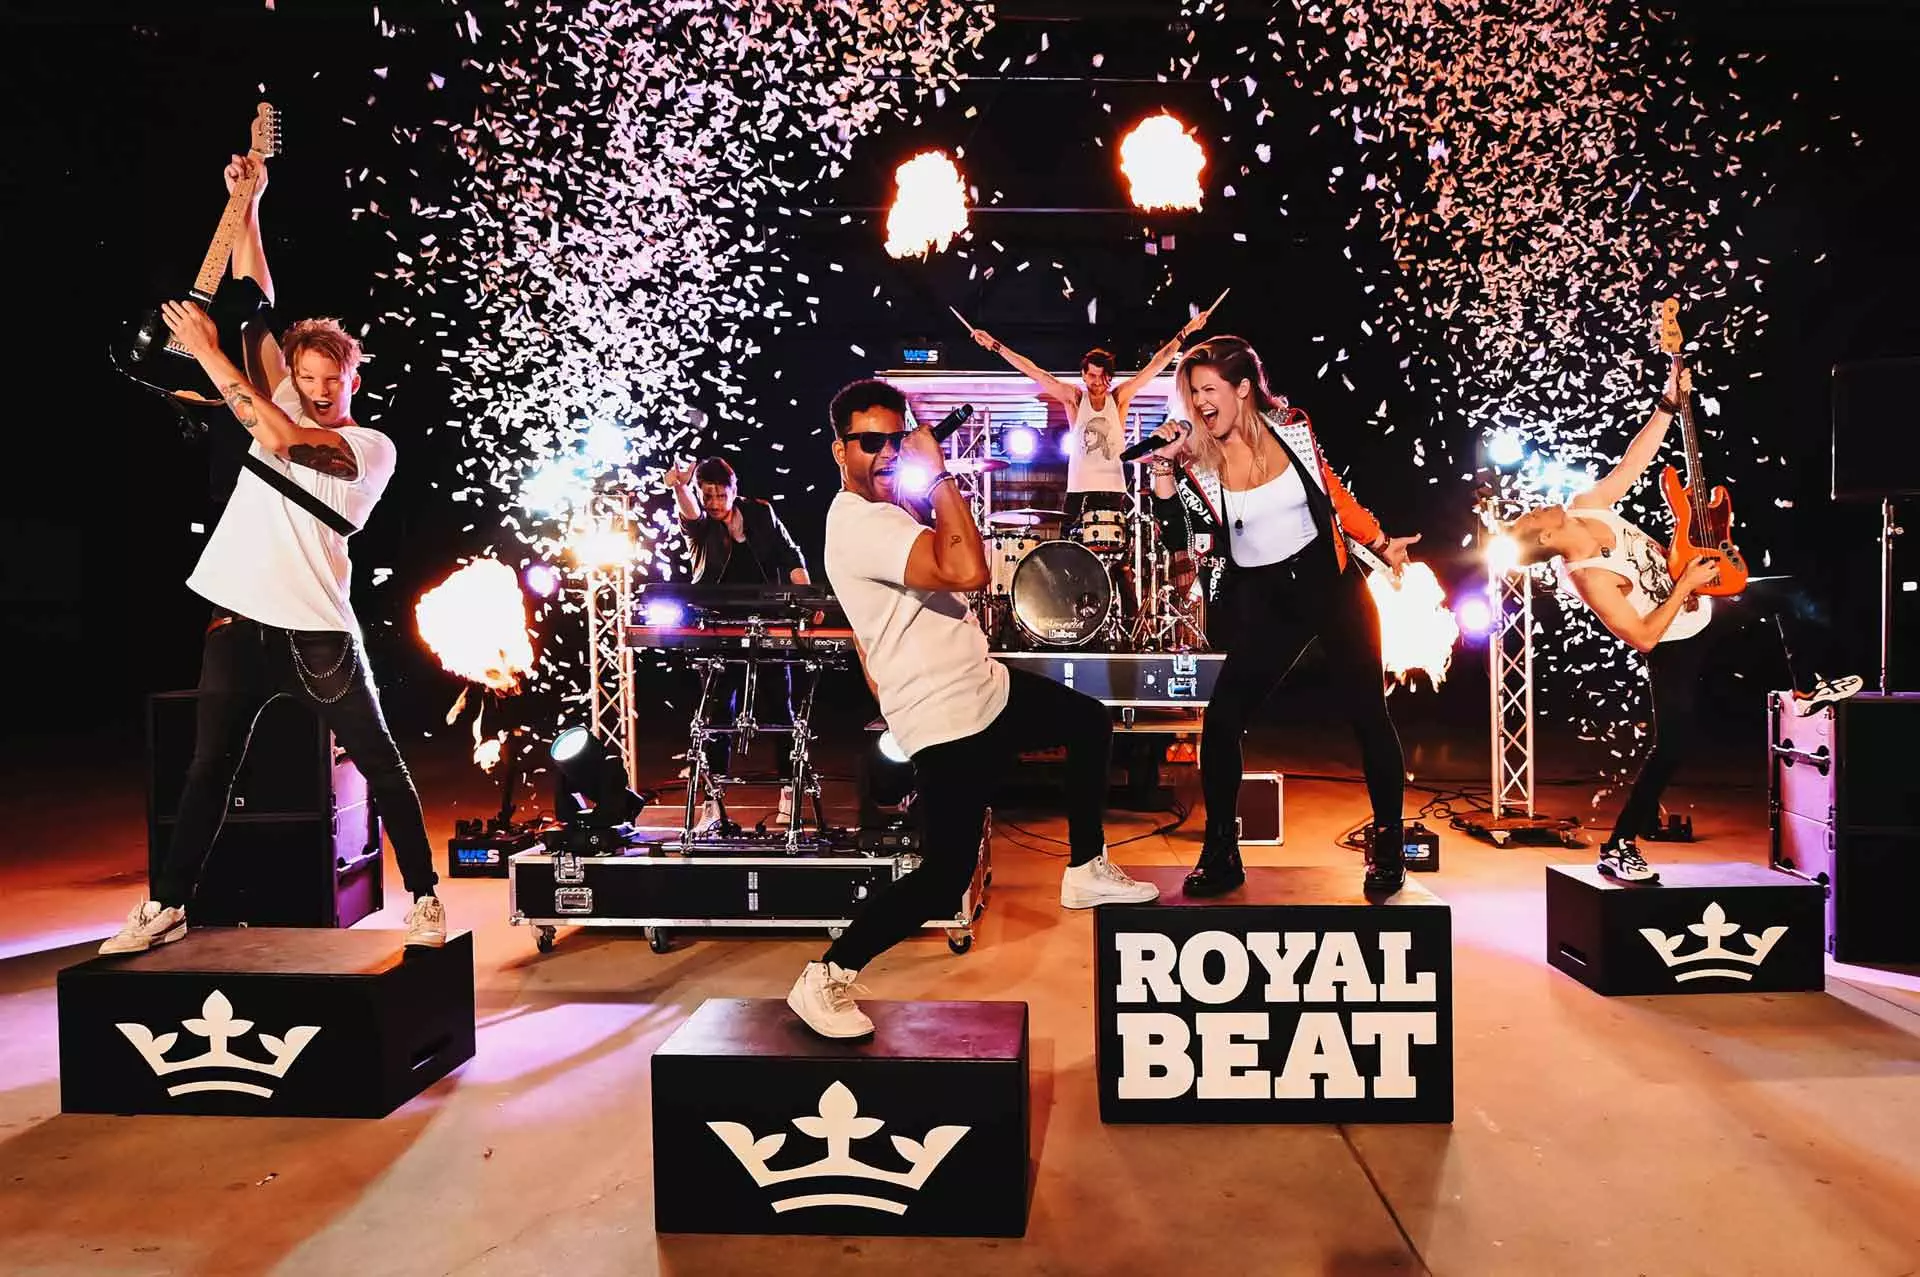 Coverband Royal Beat